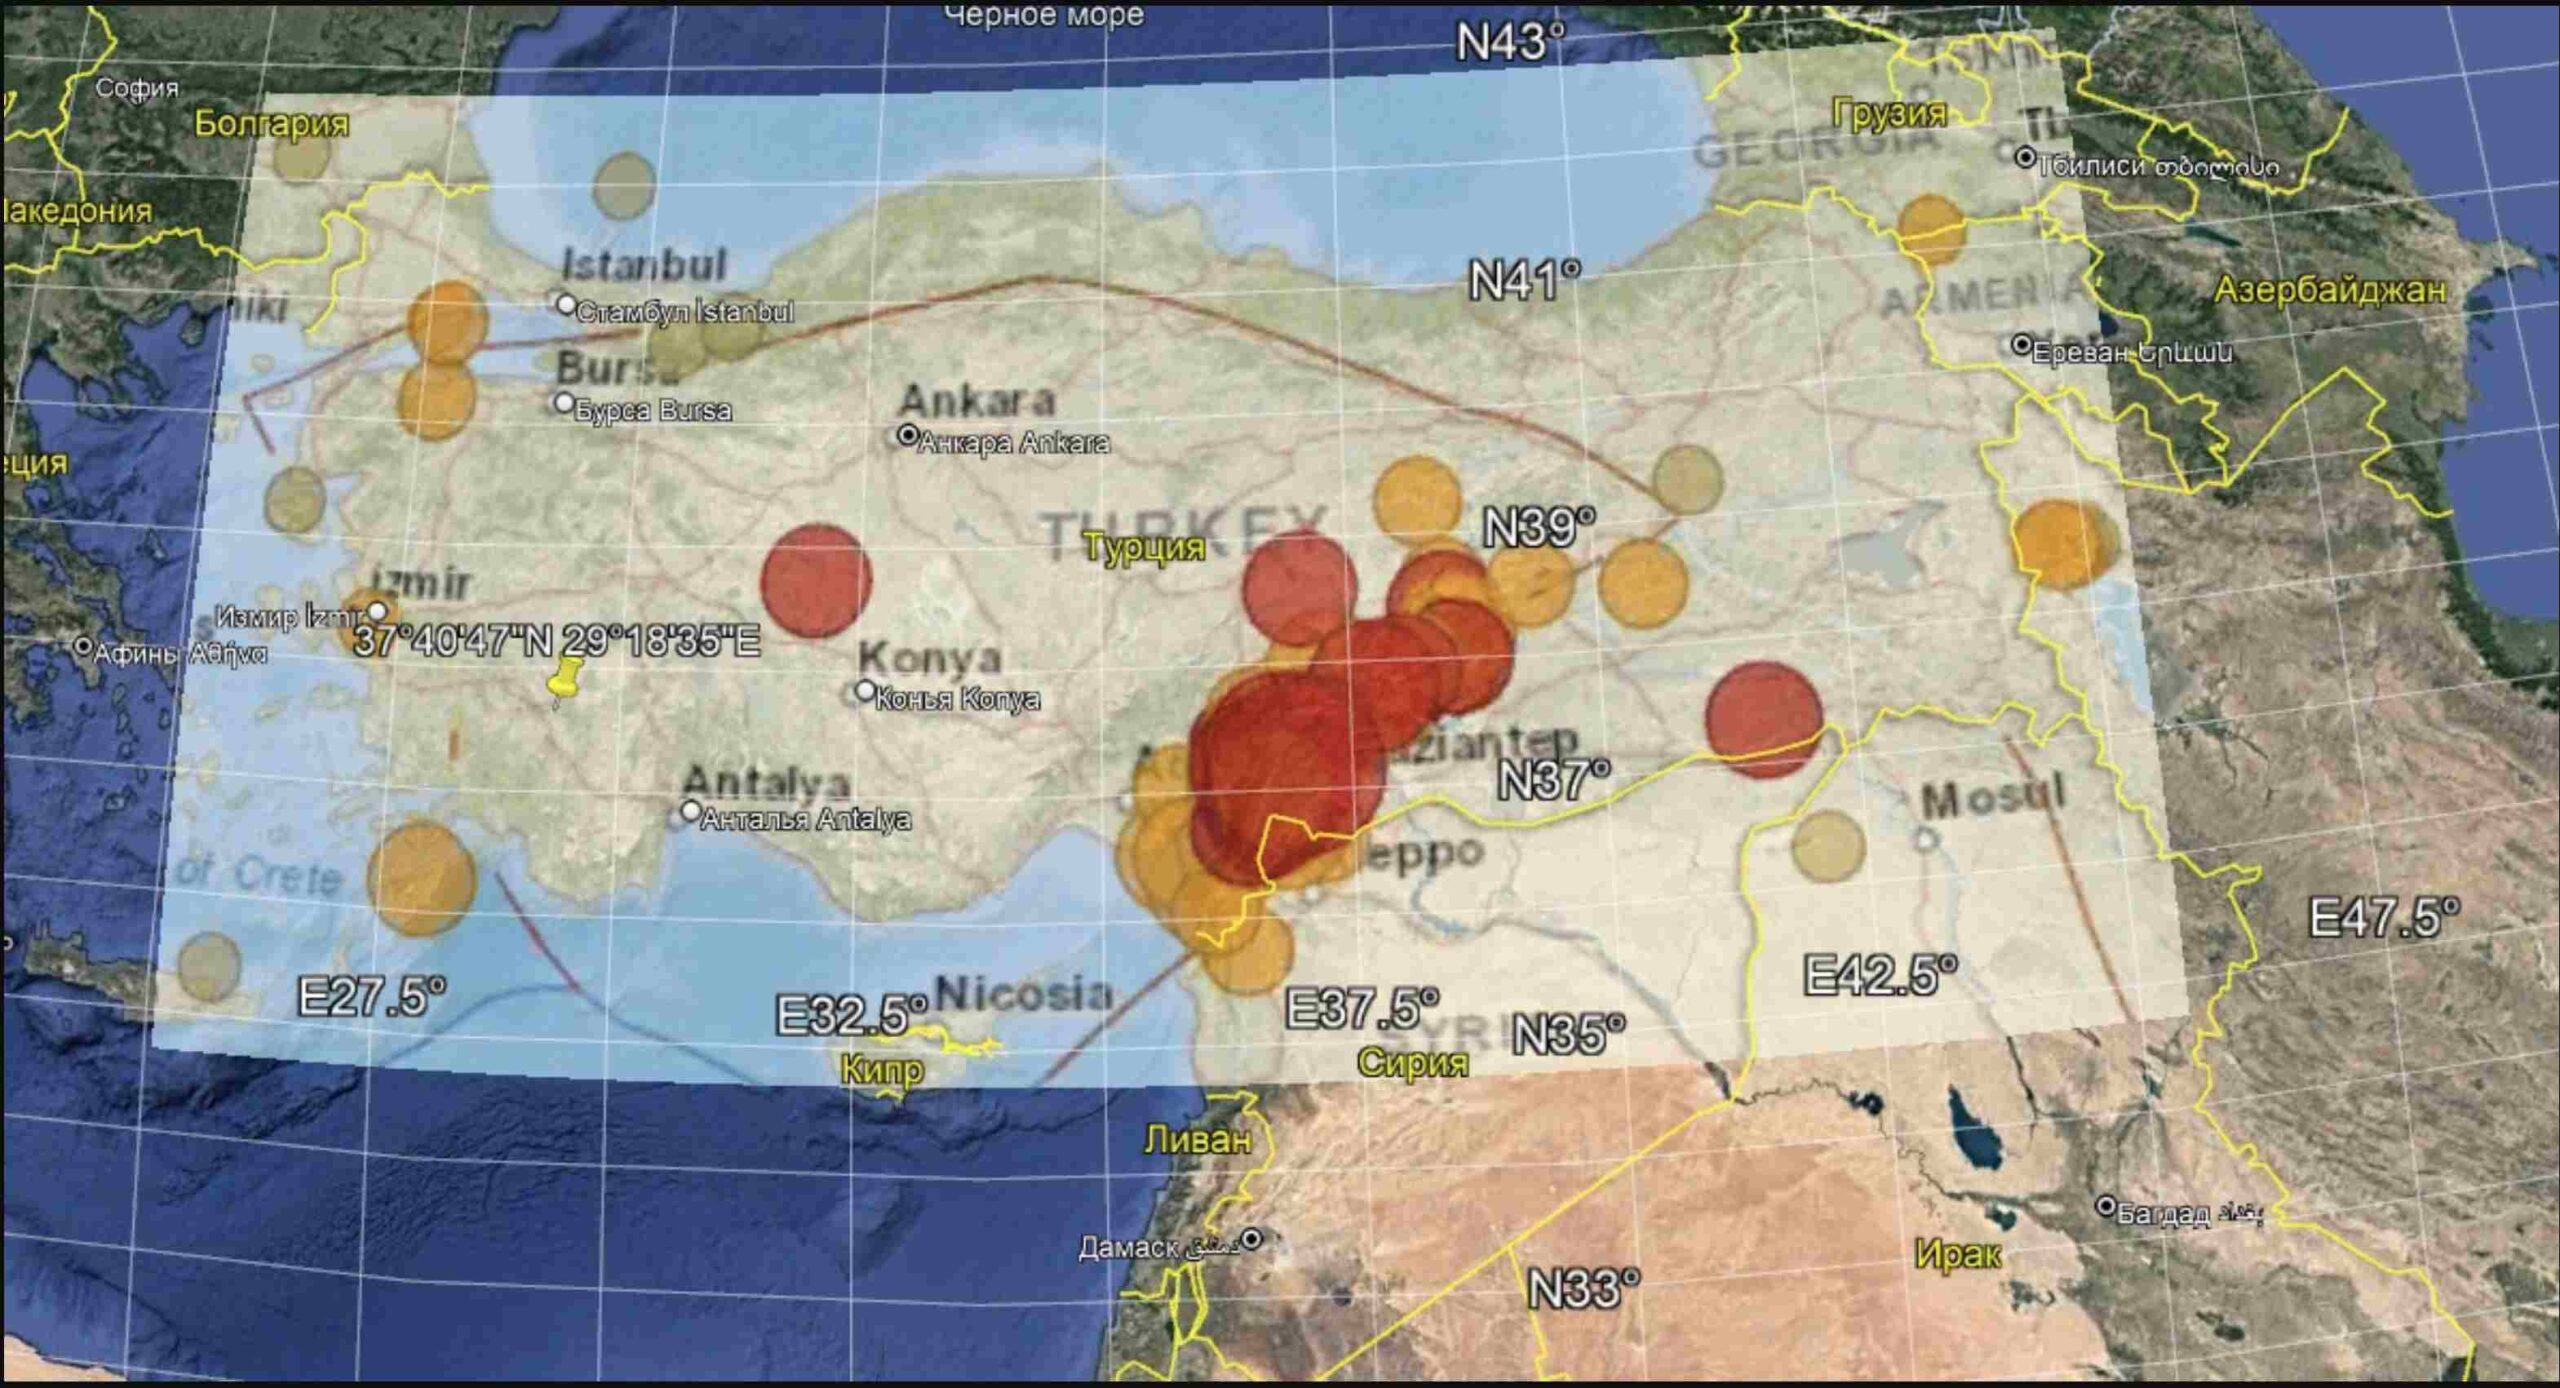 Карта землетрясений в турции. Землетрясение в Турции 2023 на карте Турции. Эпицентр землетрясения в Турции 2023. Эпицентр землетрясения в Турции 2023 на карте. Эпицентр землетрясения в Турции на карте в 2023 году.